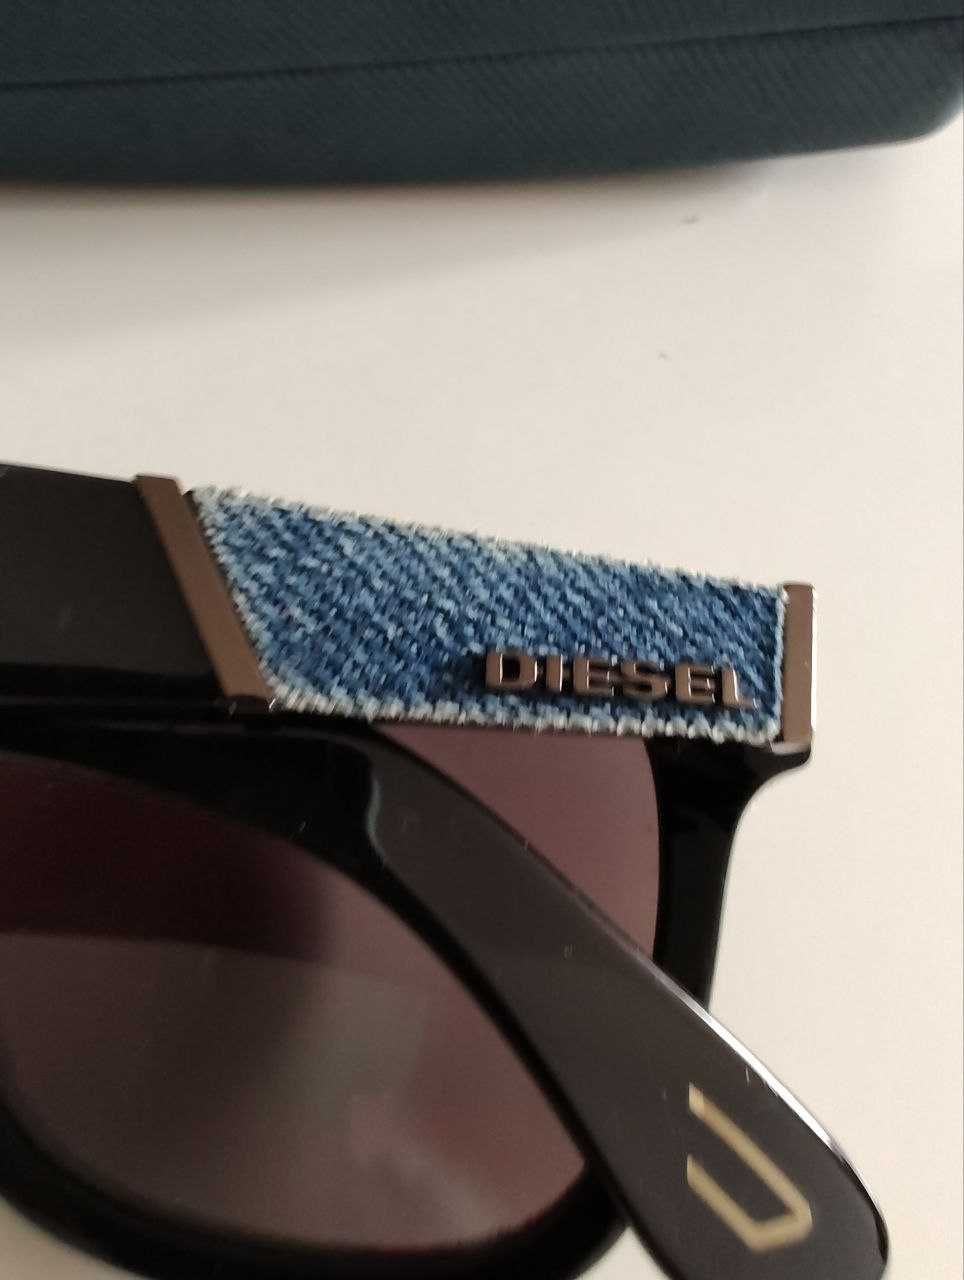 Качественные солнцезащитные очки Diesel оправа джинсы оптика + Чехол